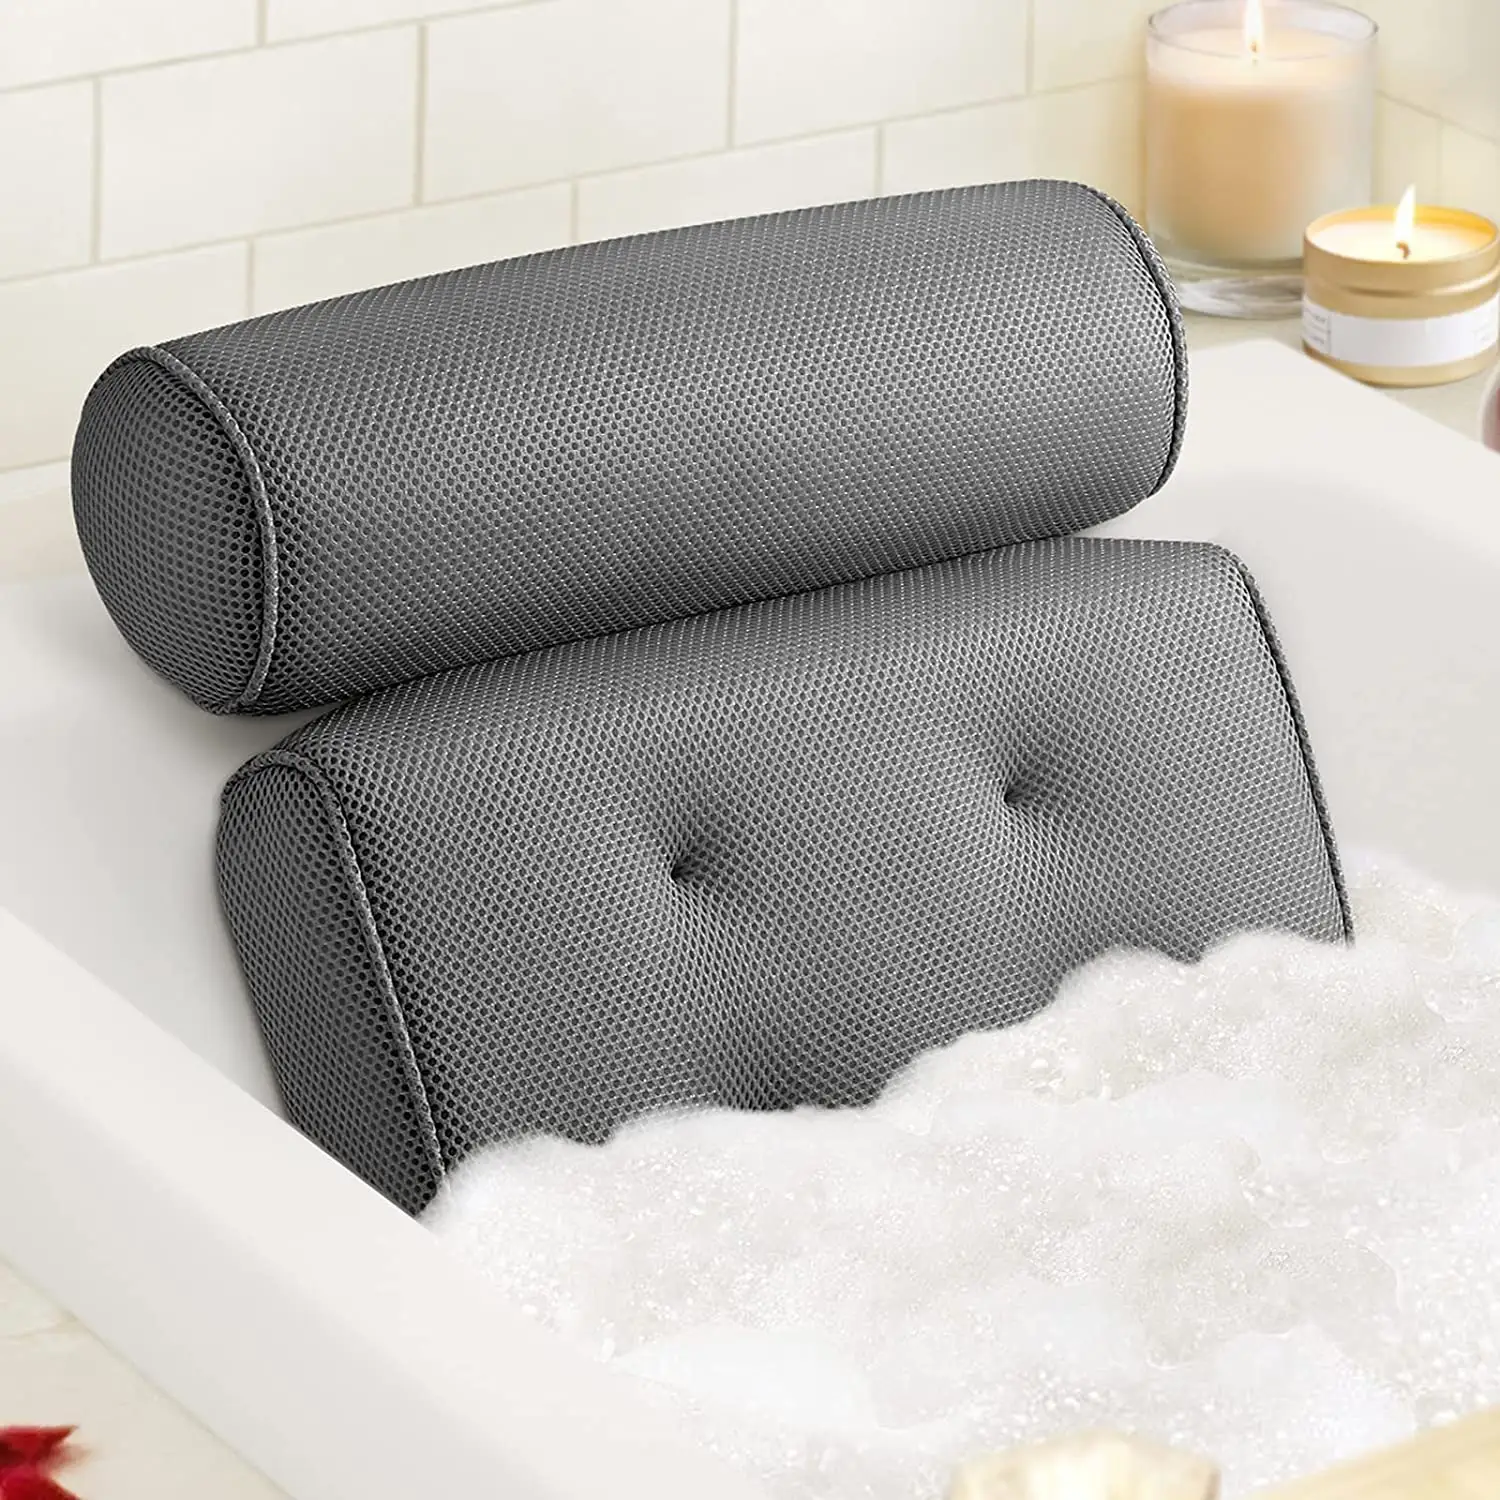 Almohada de malla de aire extragruesa y suave para baño, almohada de bañera con 6 ventosas antideslizantes, accesorios de productos de baño